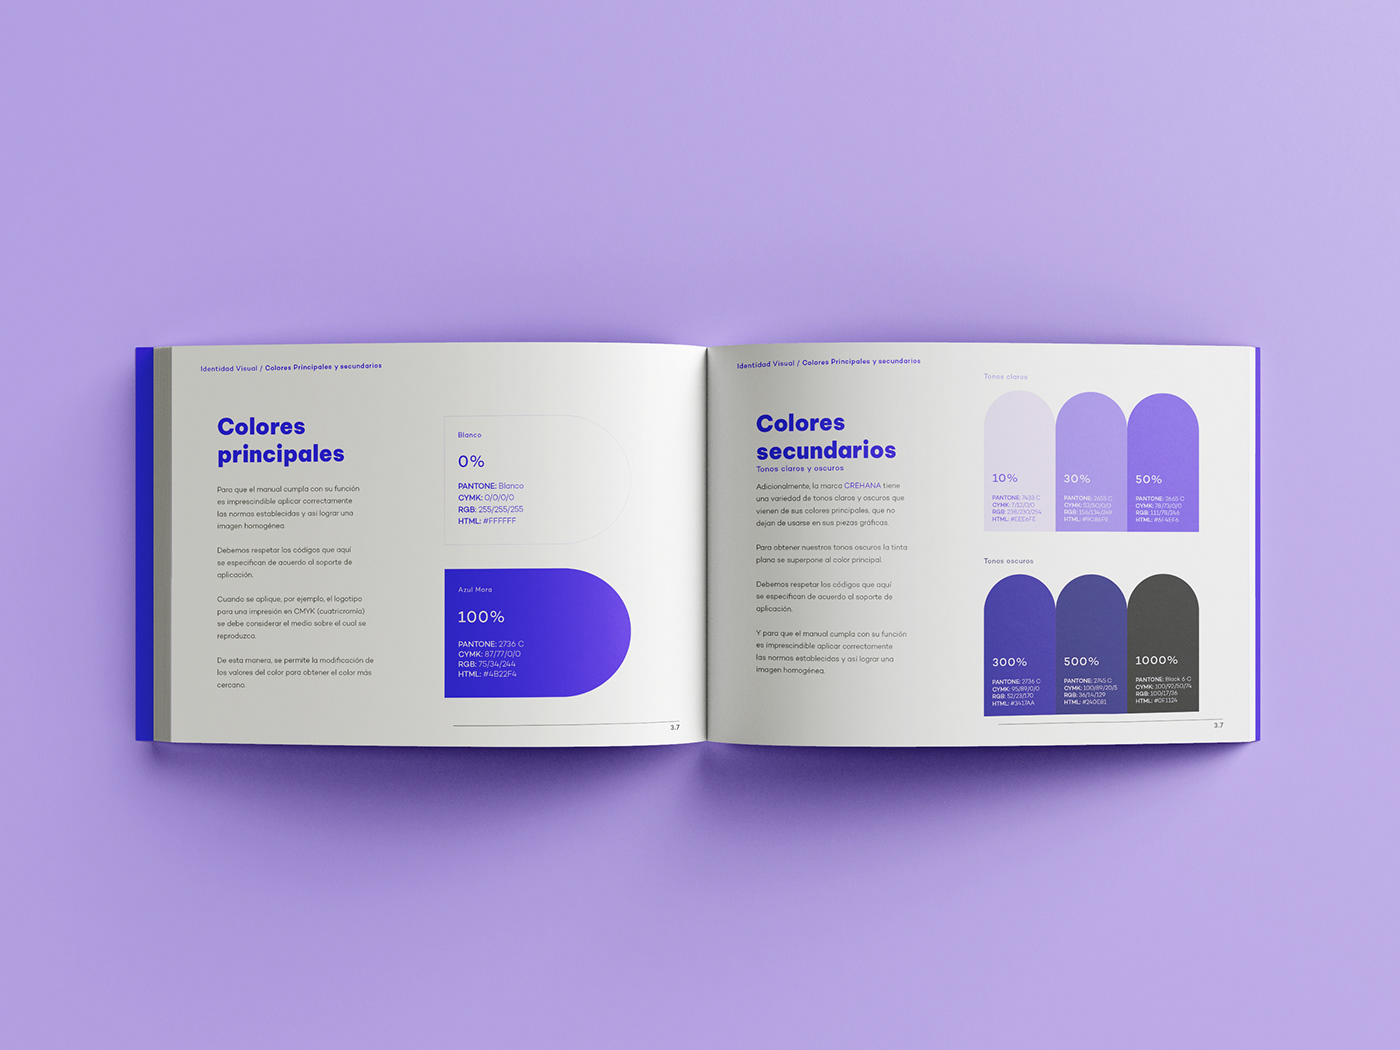 Brand Design brandbook crehana diseño gráfico identidad visual IPP Manual de Marca marca visual identity Identidad Corporativa